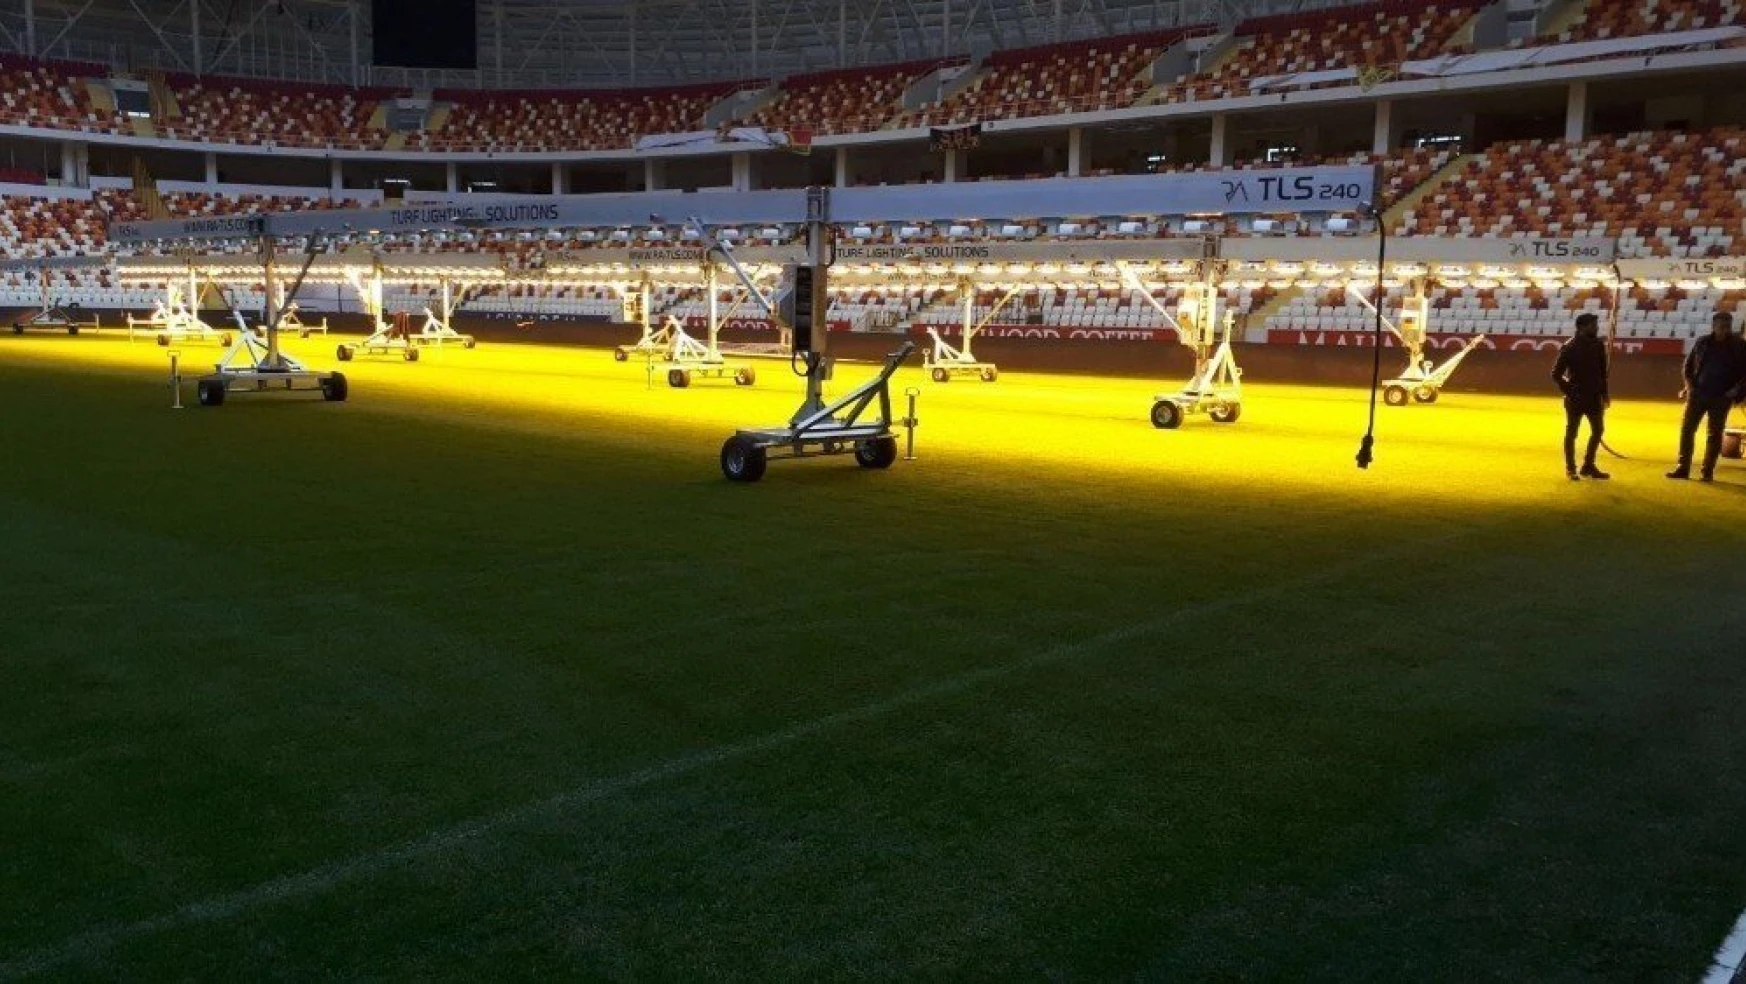 Malatya Stadının çimleri için suni güneş cihazı alındı
